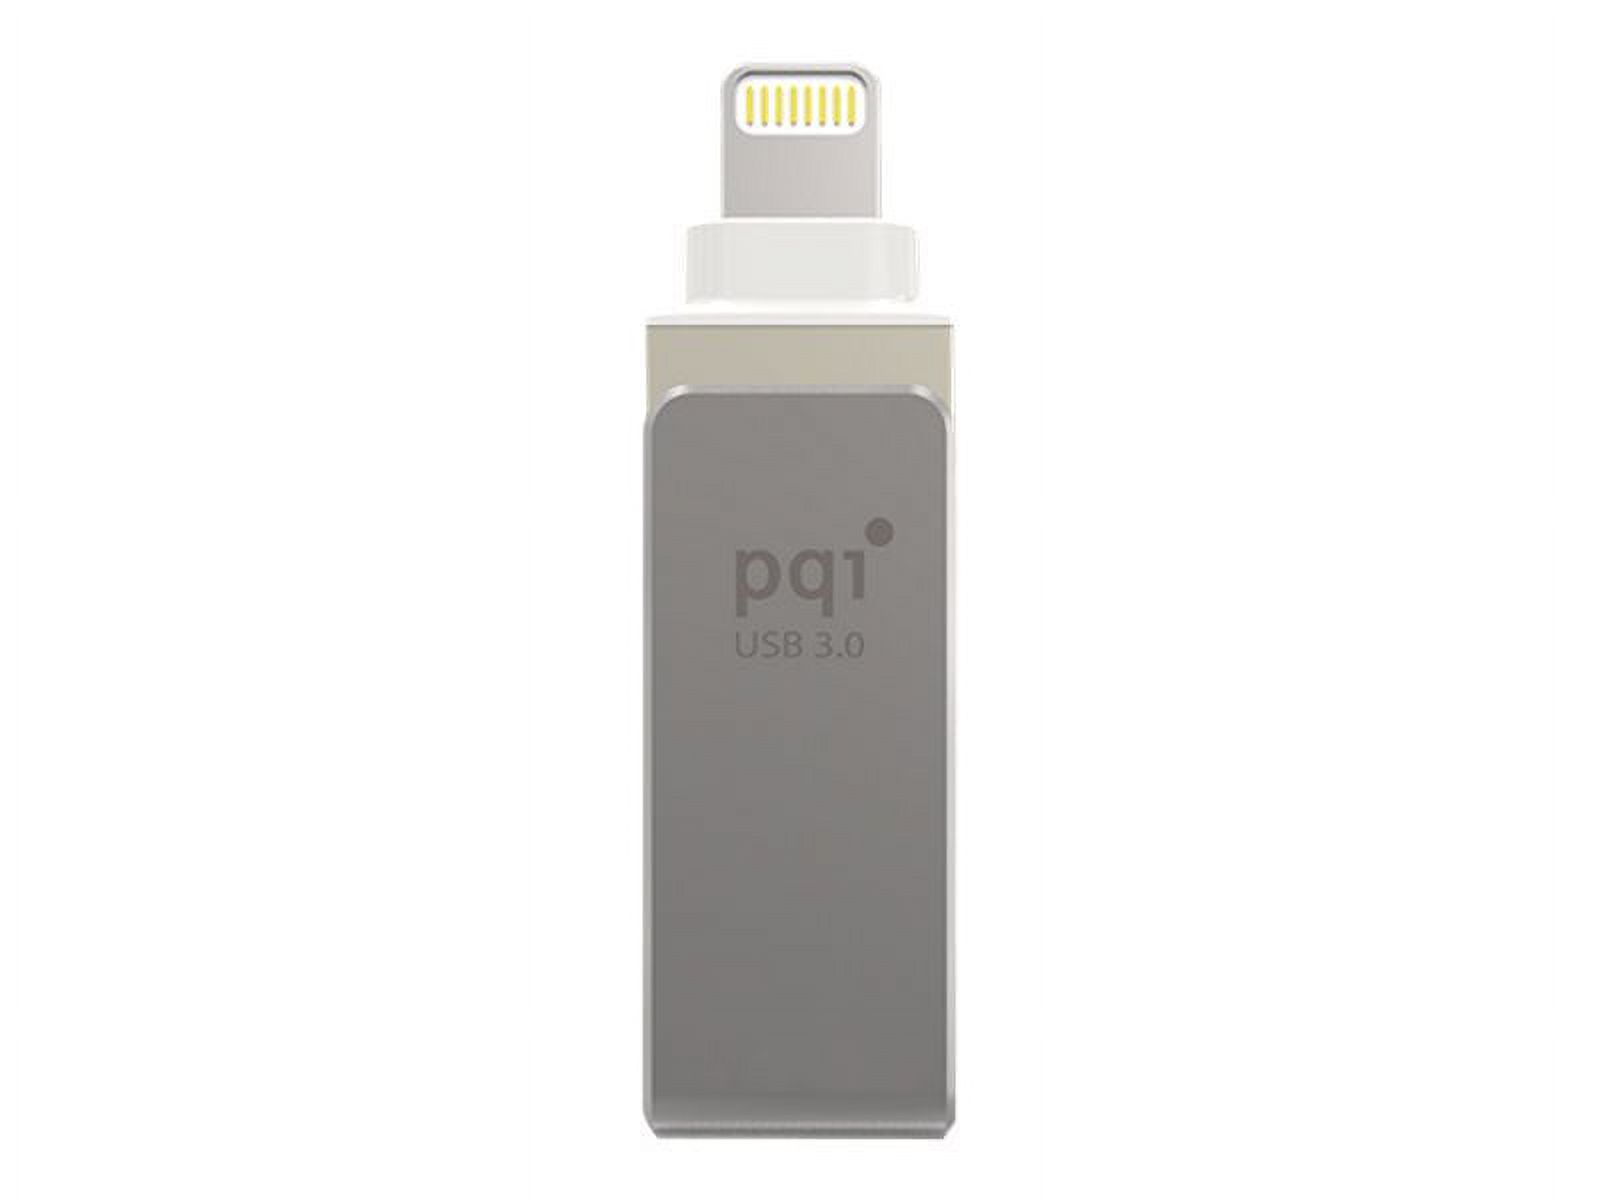 PQI iConnect mini - USB flash drive - 32 GB - USB 3.0 / Lightning - metallic gray - image 1 of 4